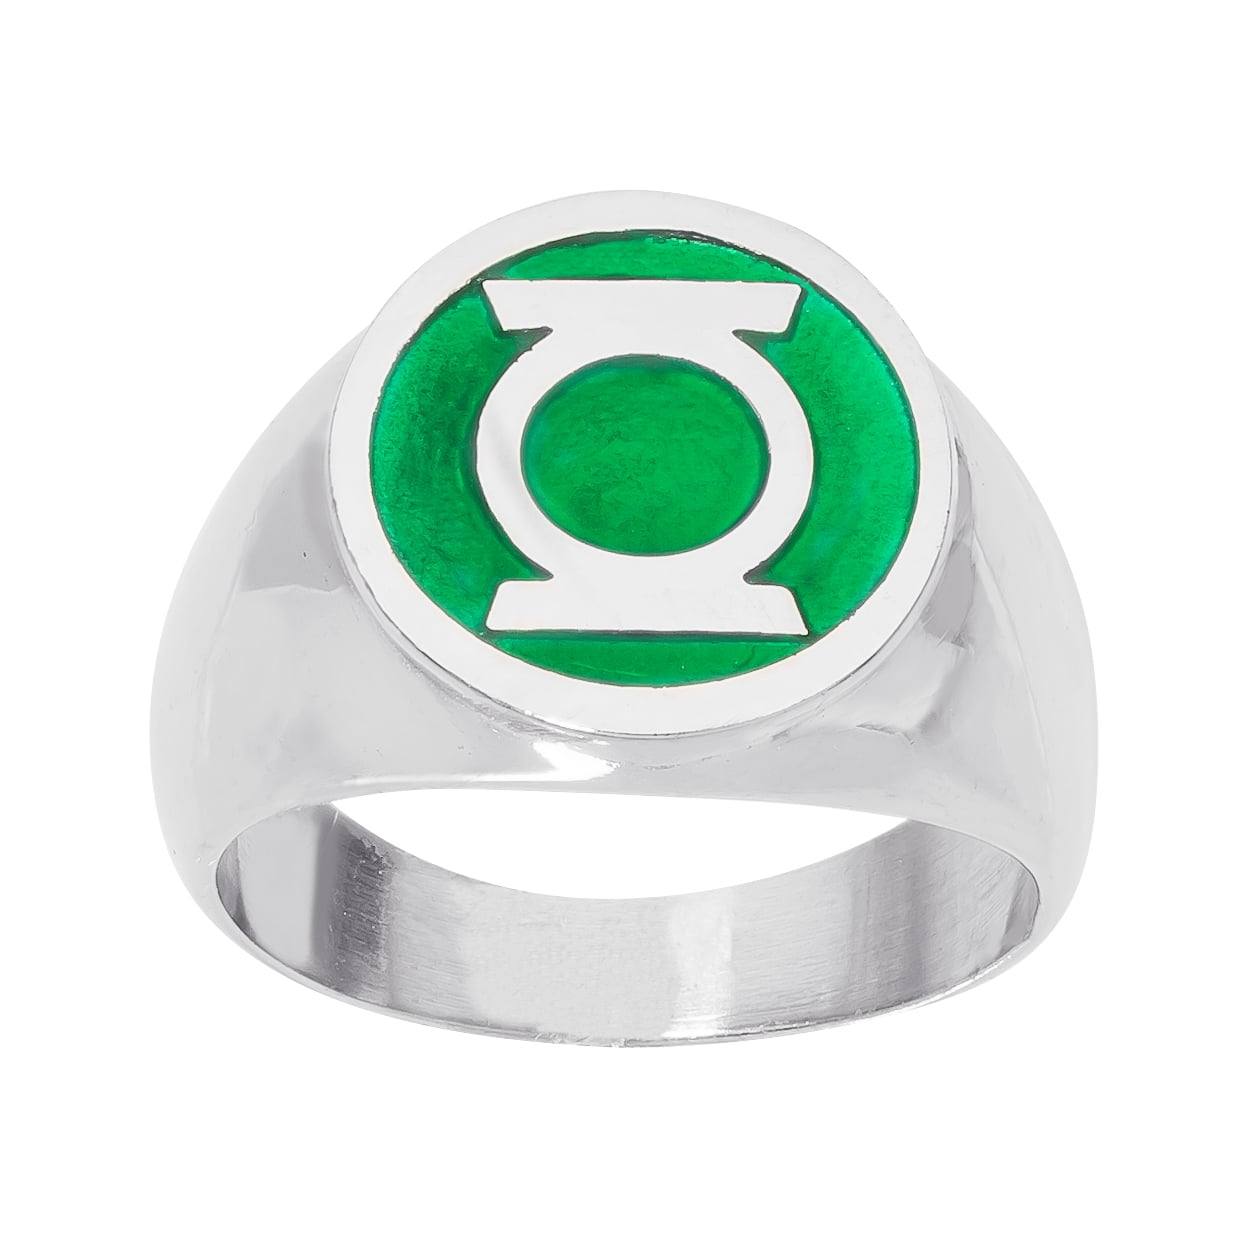 NEW UNWORN DC Comics Green Lantern Logo Men's Metal Power Ring Size 7 